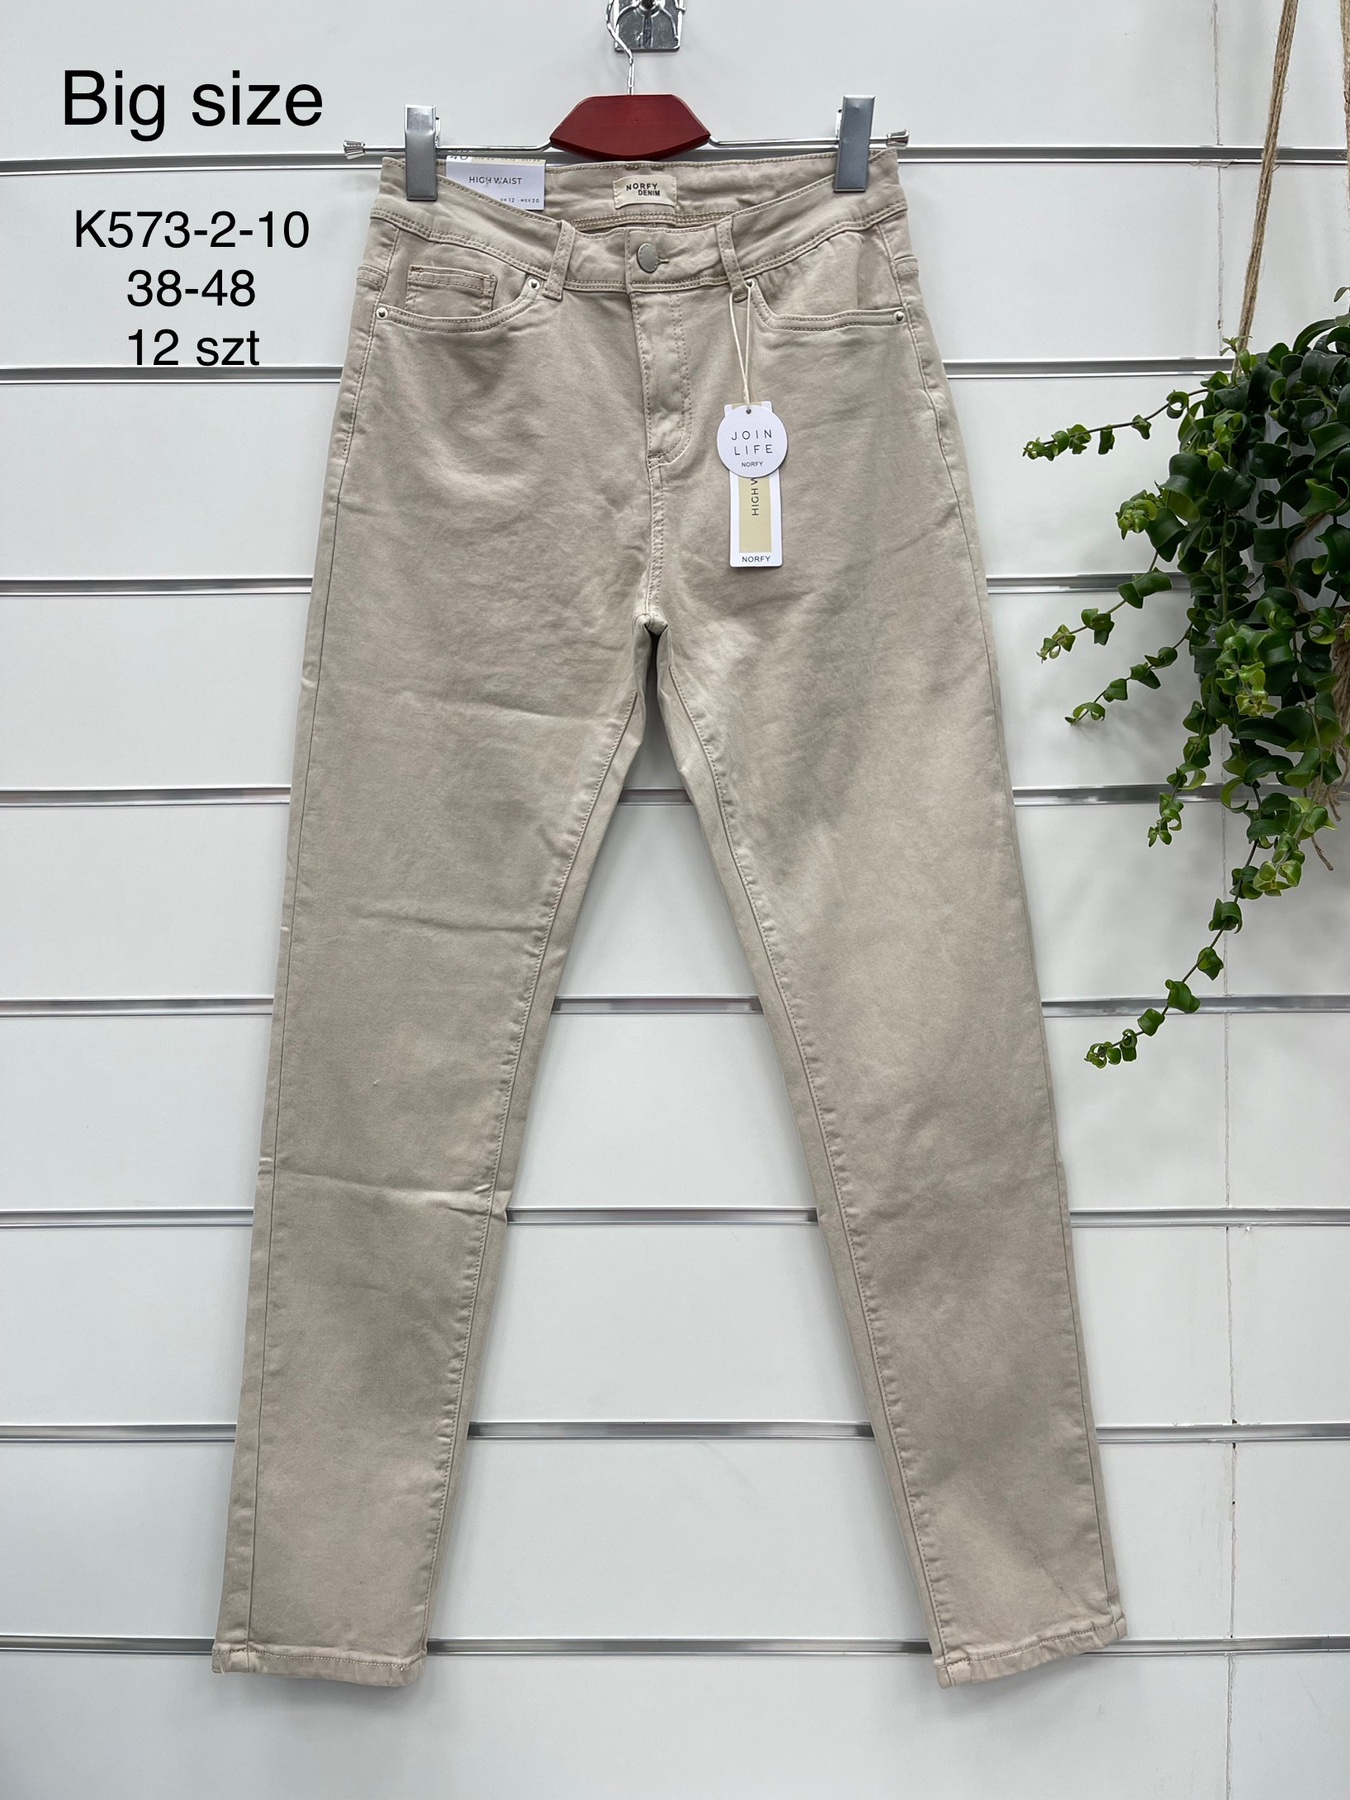 Spodnie damskie jeans Roz  38-48 .  1 kolor . Paczka 12szt